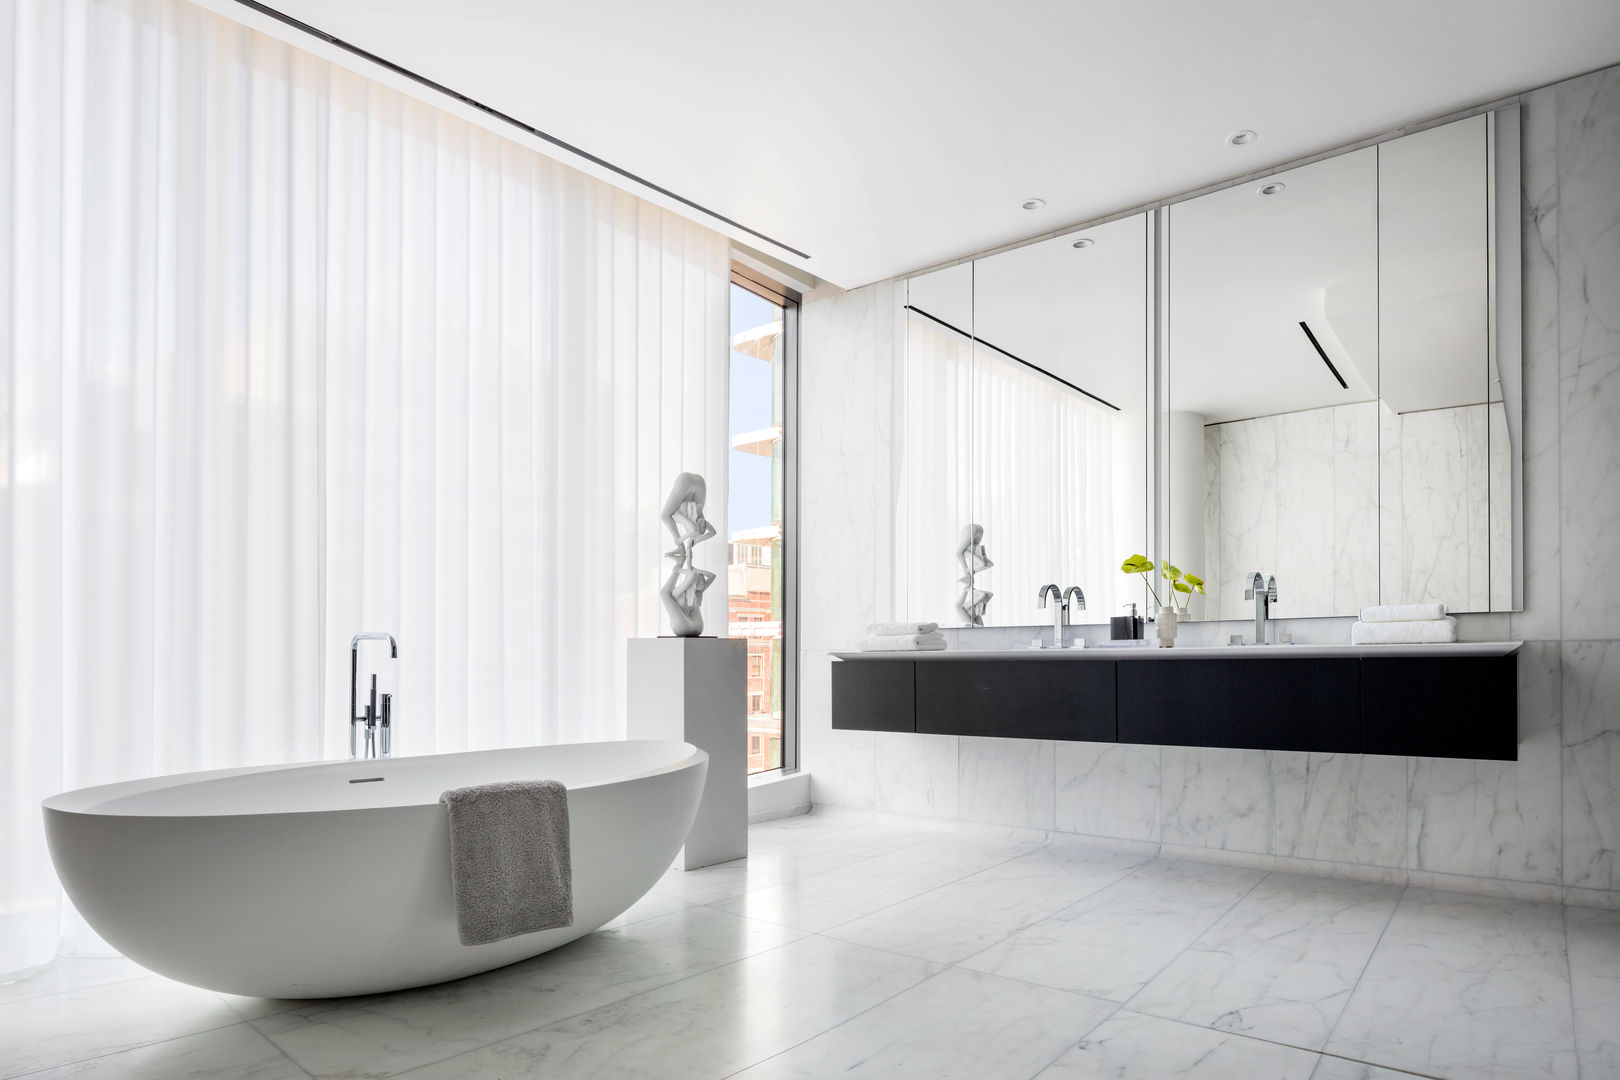 520 West 28th_New York City, Zaha Hadid Architects Zaha Hadid Architects Baños de estilo minimalista Concreto zaha hadid,baño,bathroom